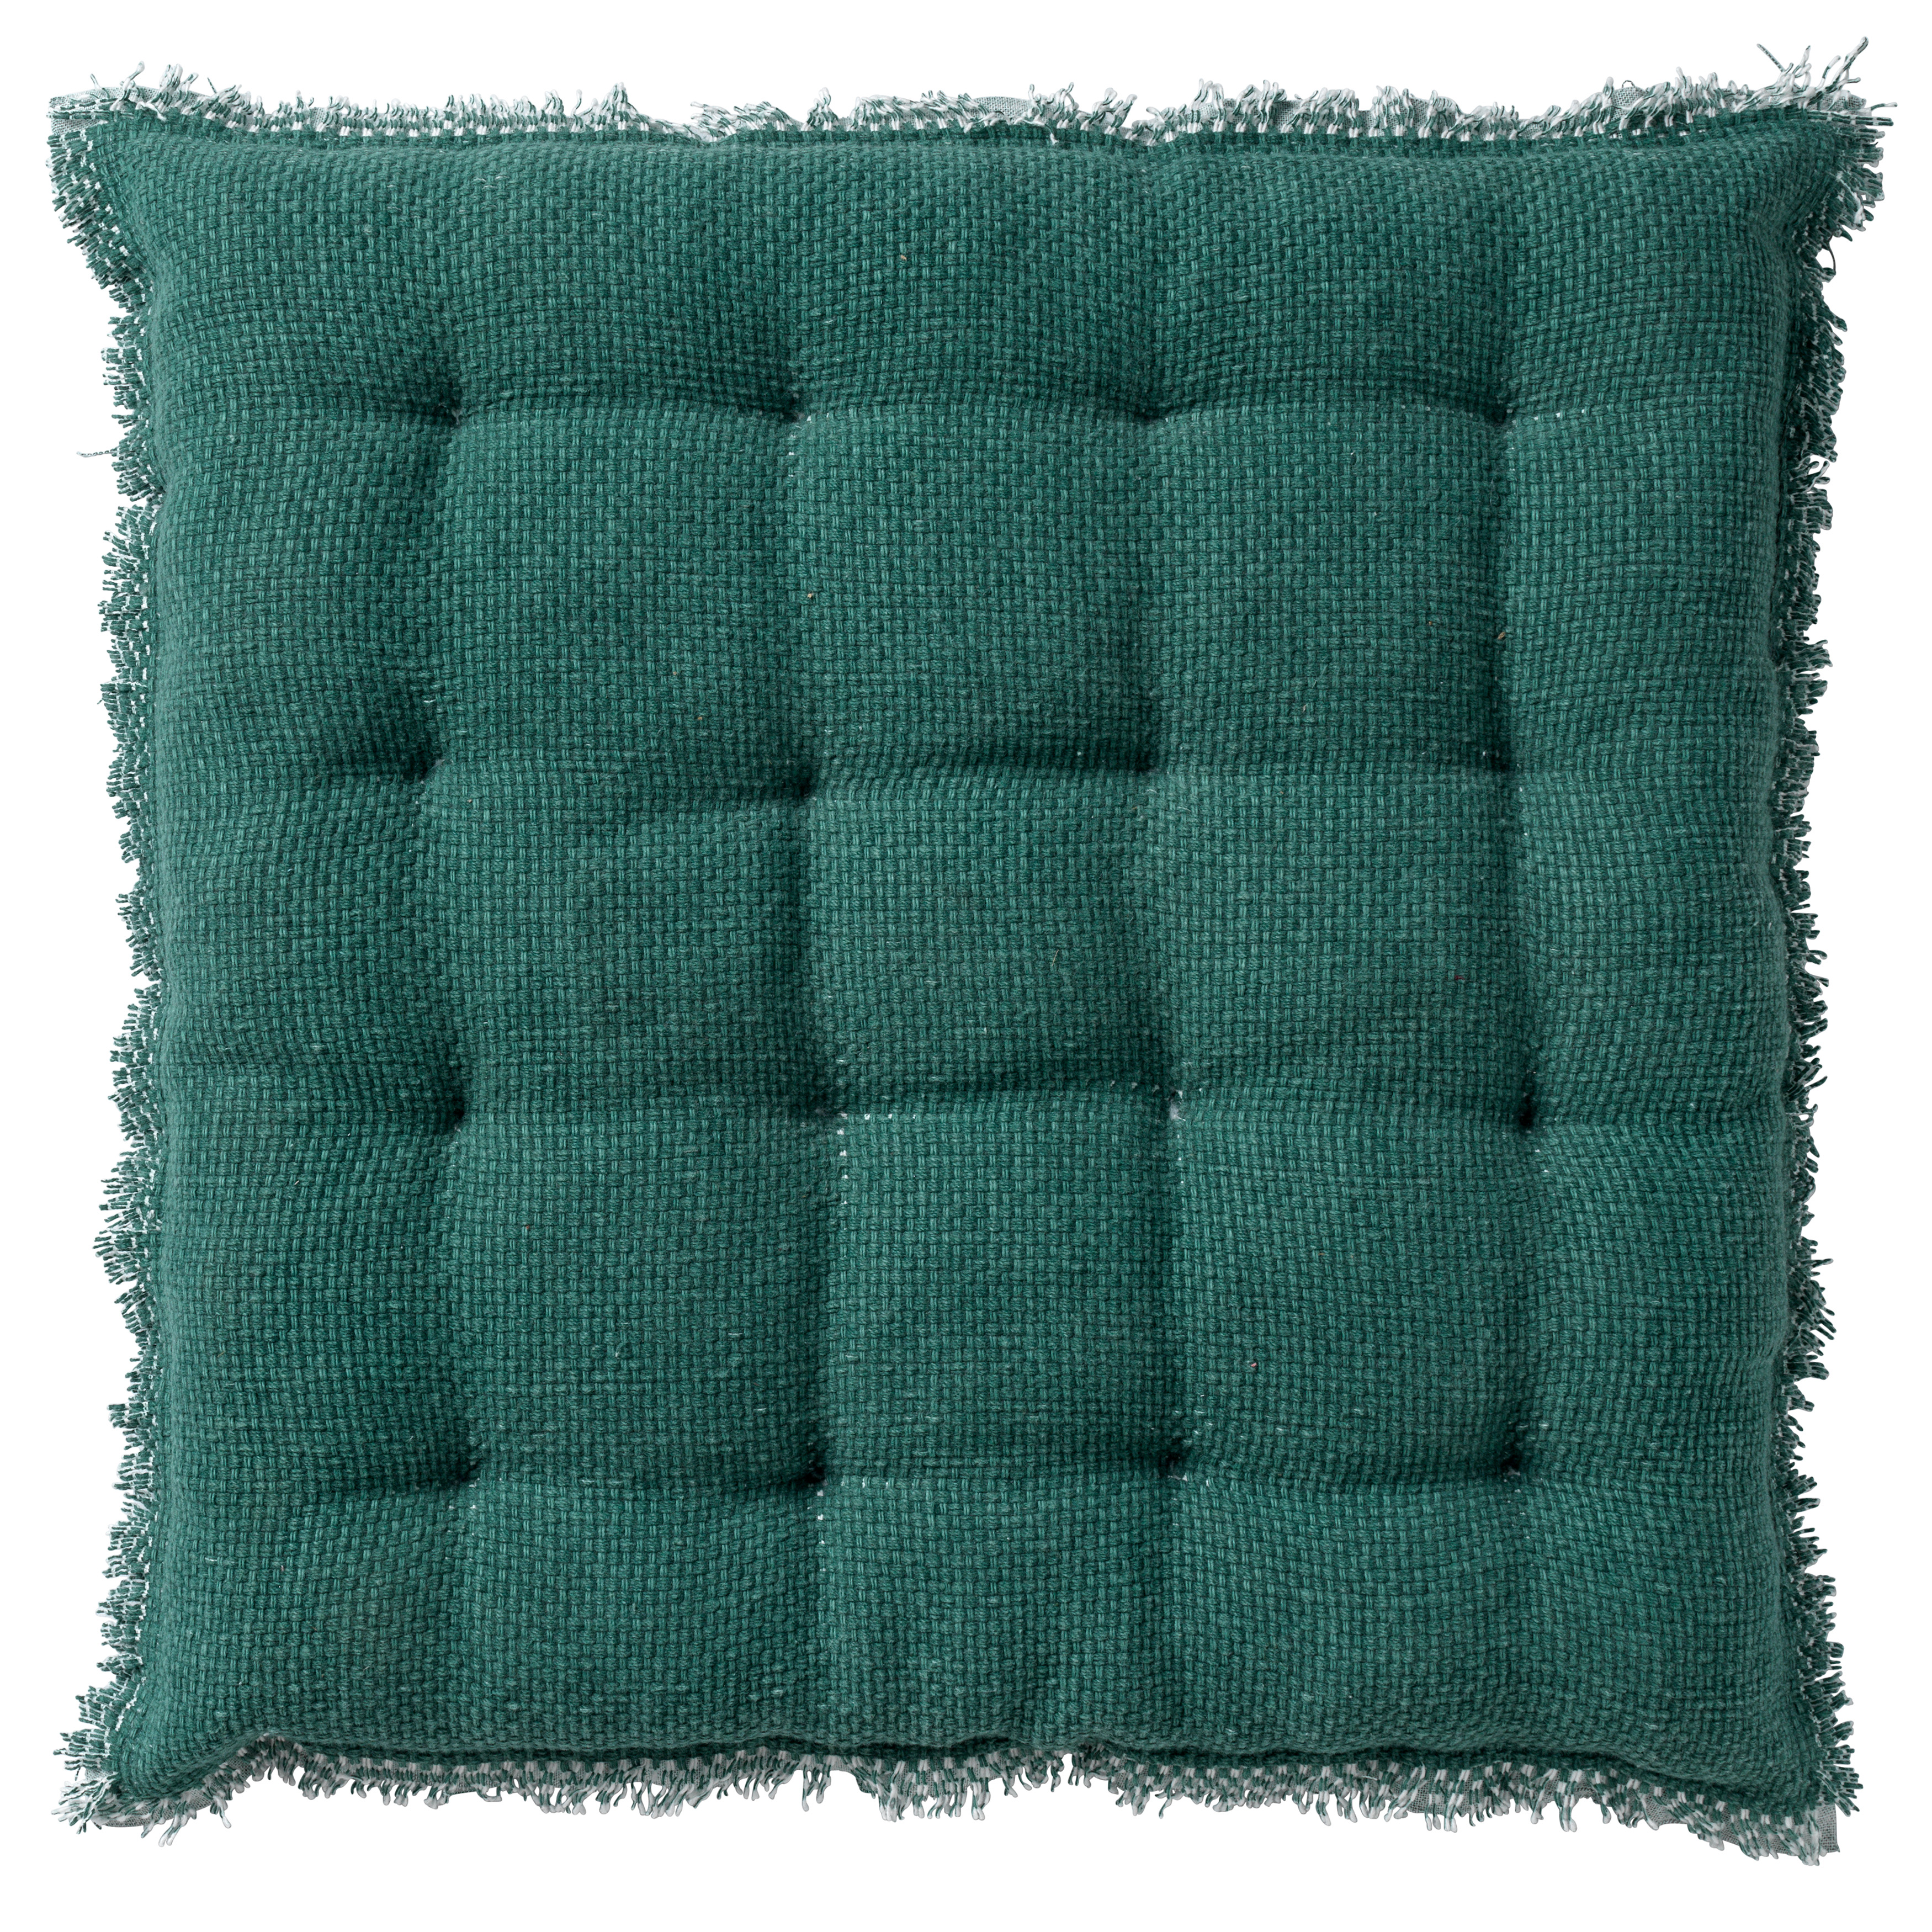 BURTO - Seat pad 40x40 cm Sagebrush Green - green